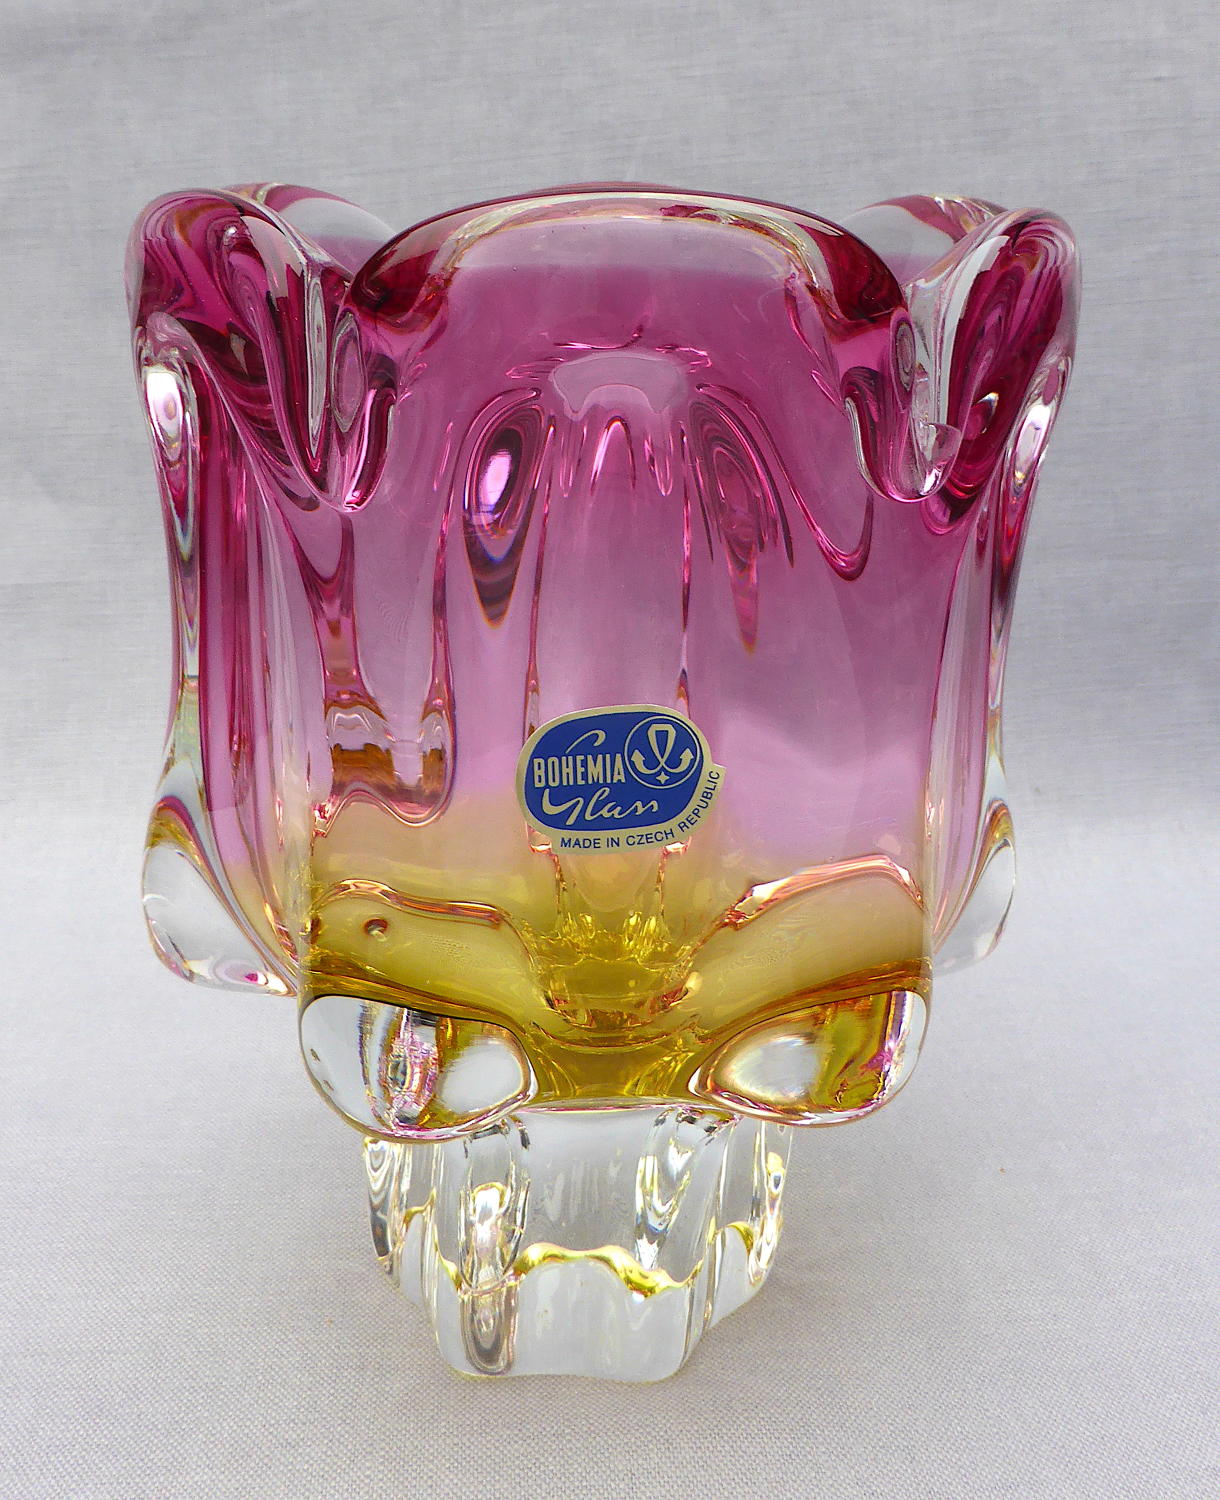 Czech Chřibská art glass vase by Josef Hospodska